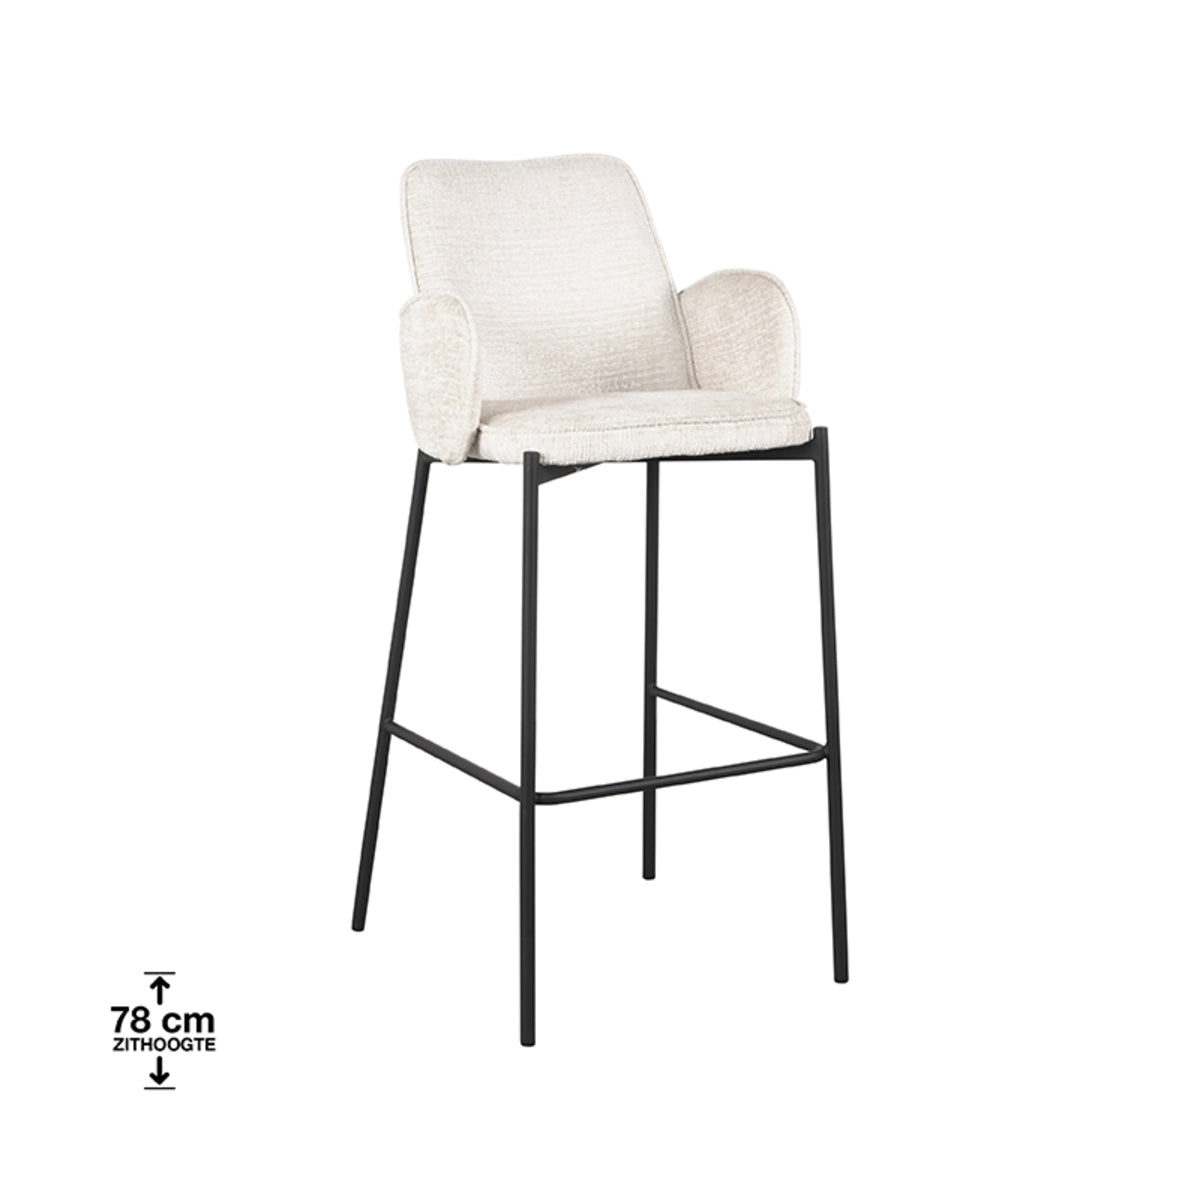 LABEL51 Bar stool Joni - Cream - Velvet - Seat height 78 cm |